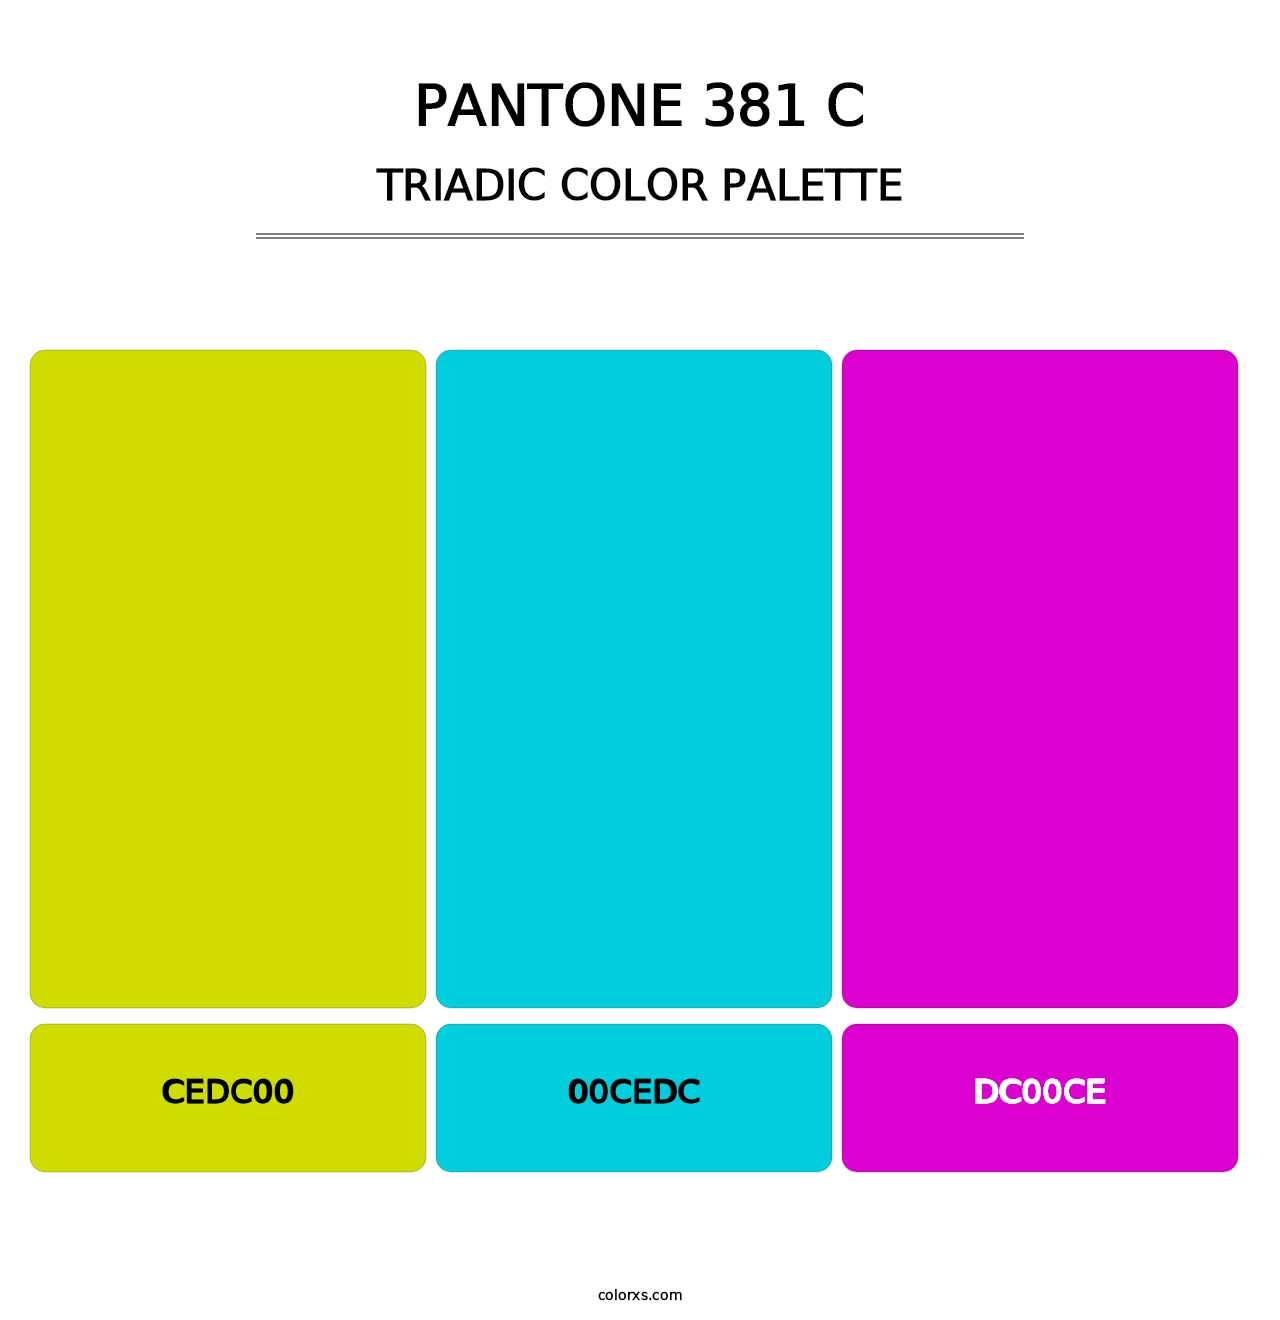 PANTONE 381 C - Triadic Color Palette